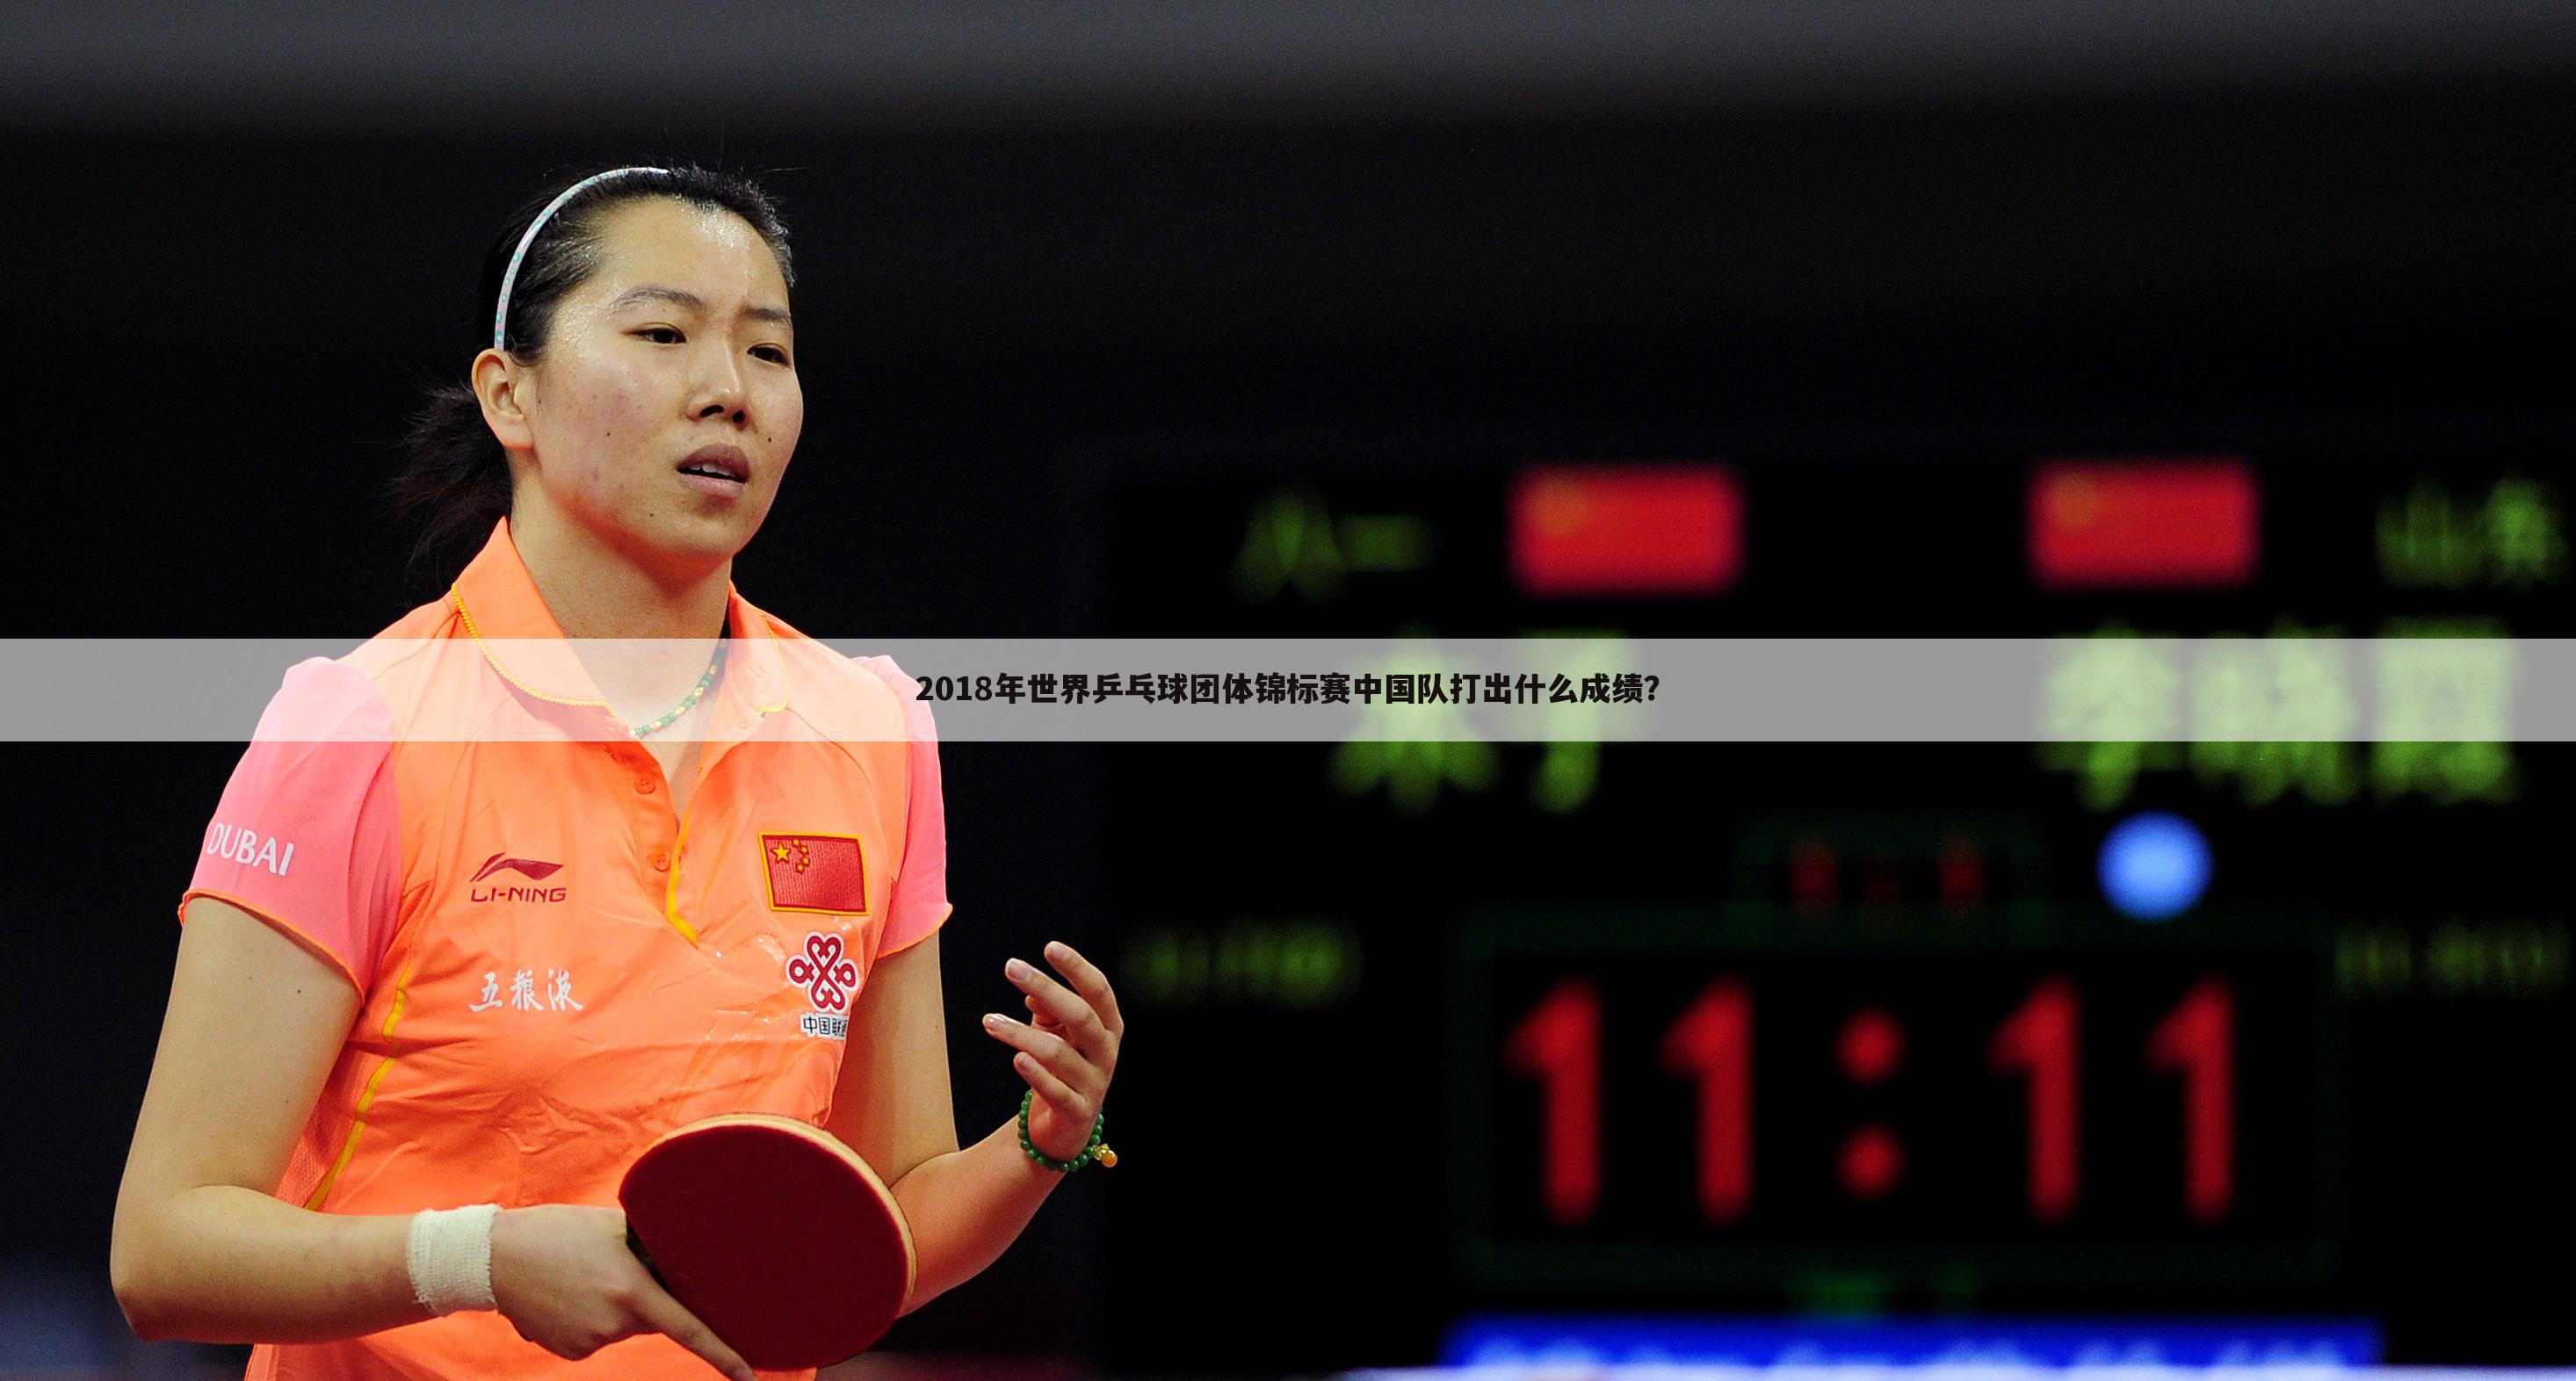 2018年世界乒乓球团体锦标赛中国队打出什么成绩？